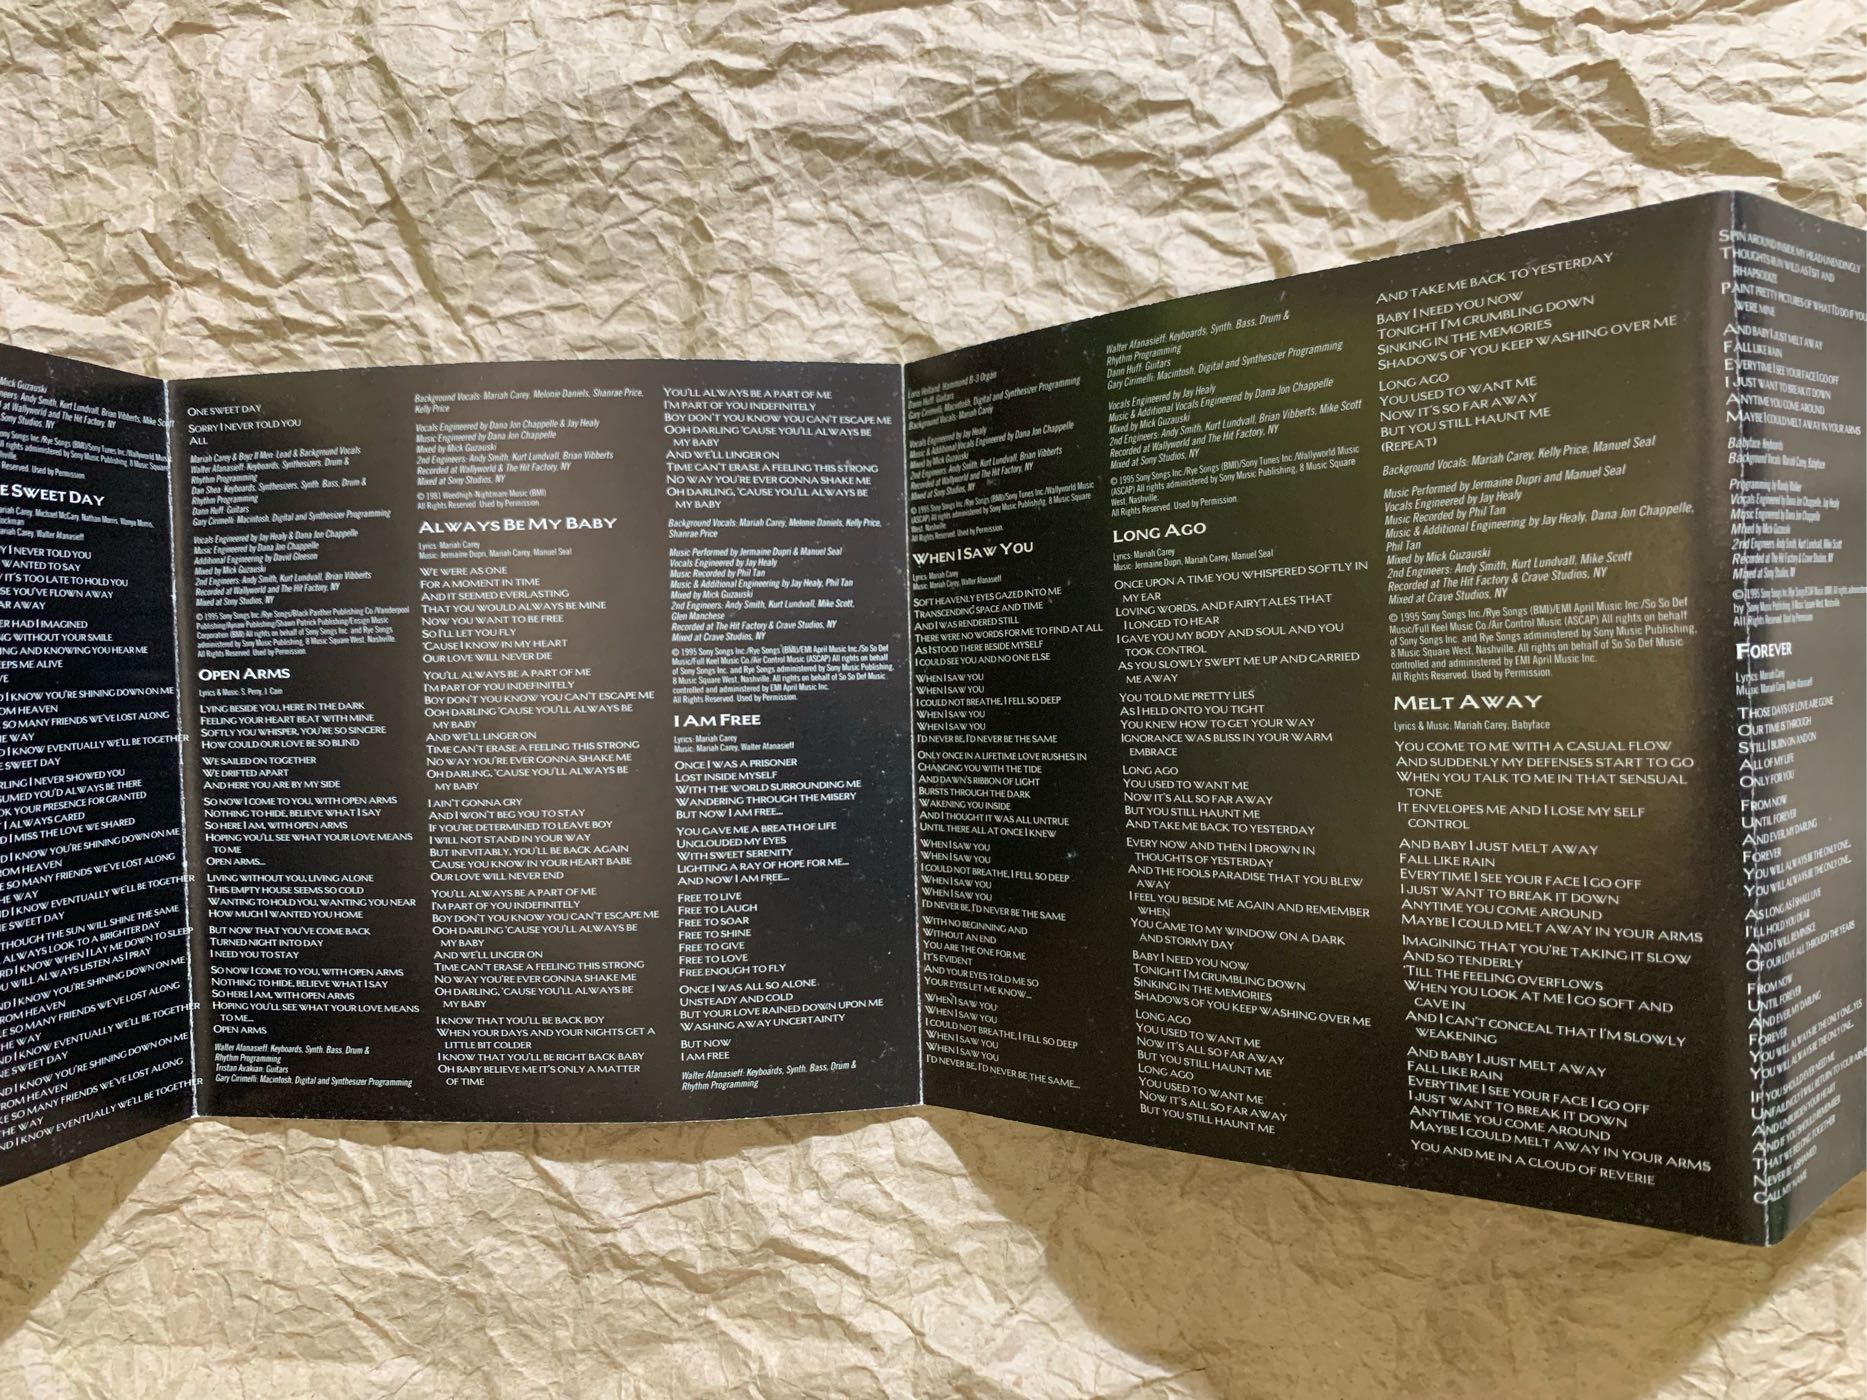 花蝴蝶-瑪麗亞凱莉-夢遊仙境 二手專輯CD (美國版） Mariah Carey - Daydream Album CD